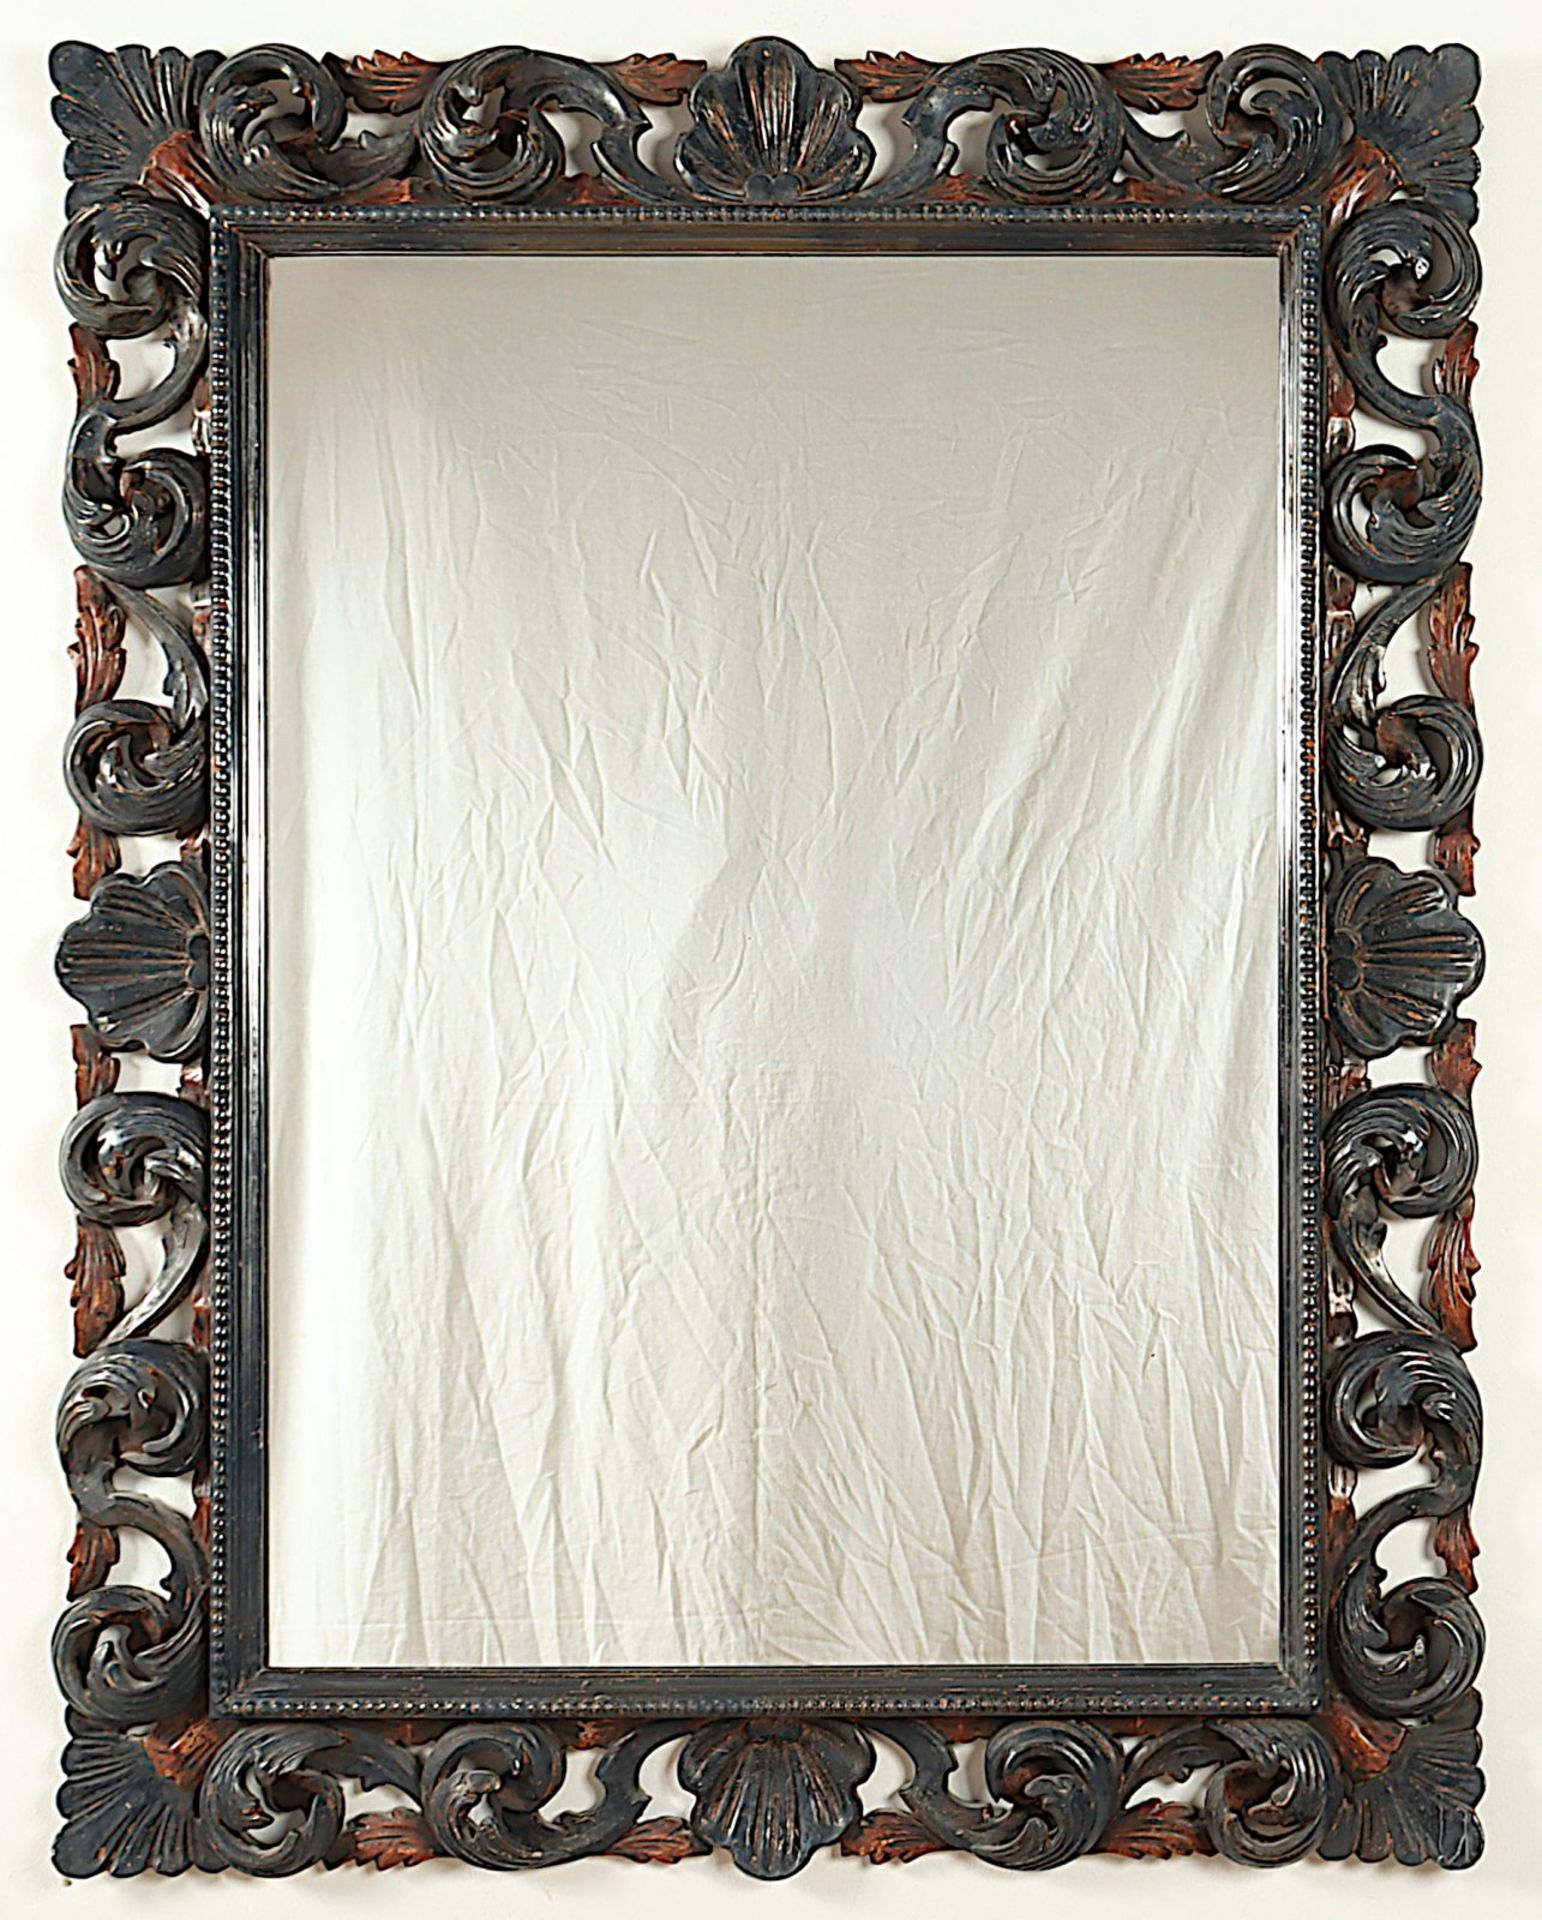 Spiegel mit Florentinerrahmen - Bild 2 aus 2